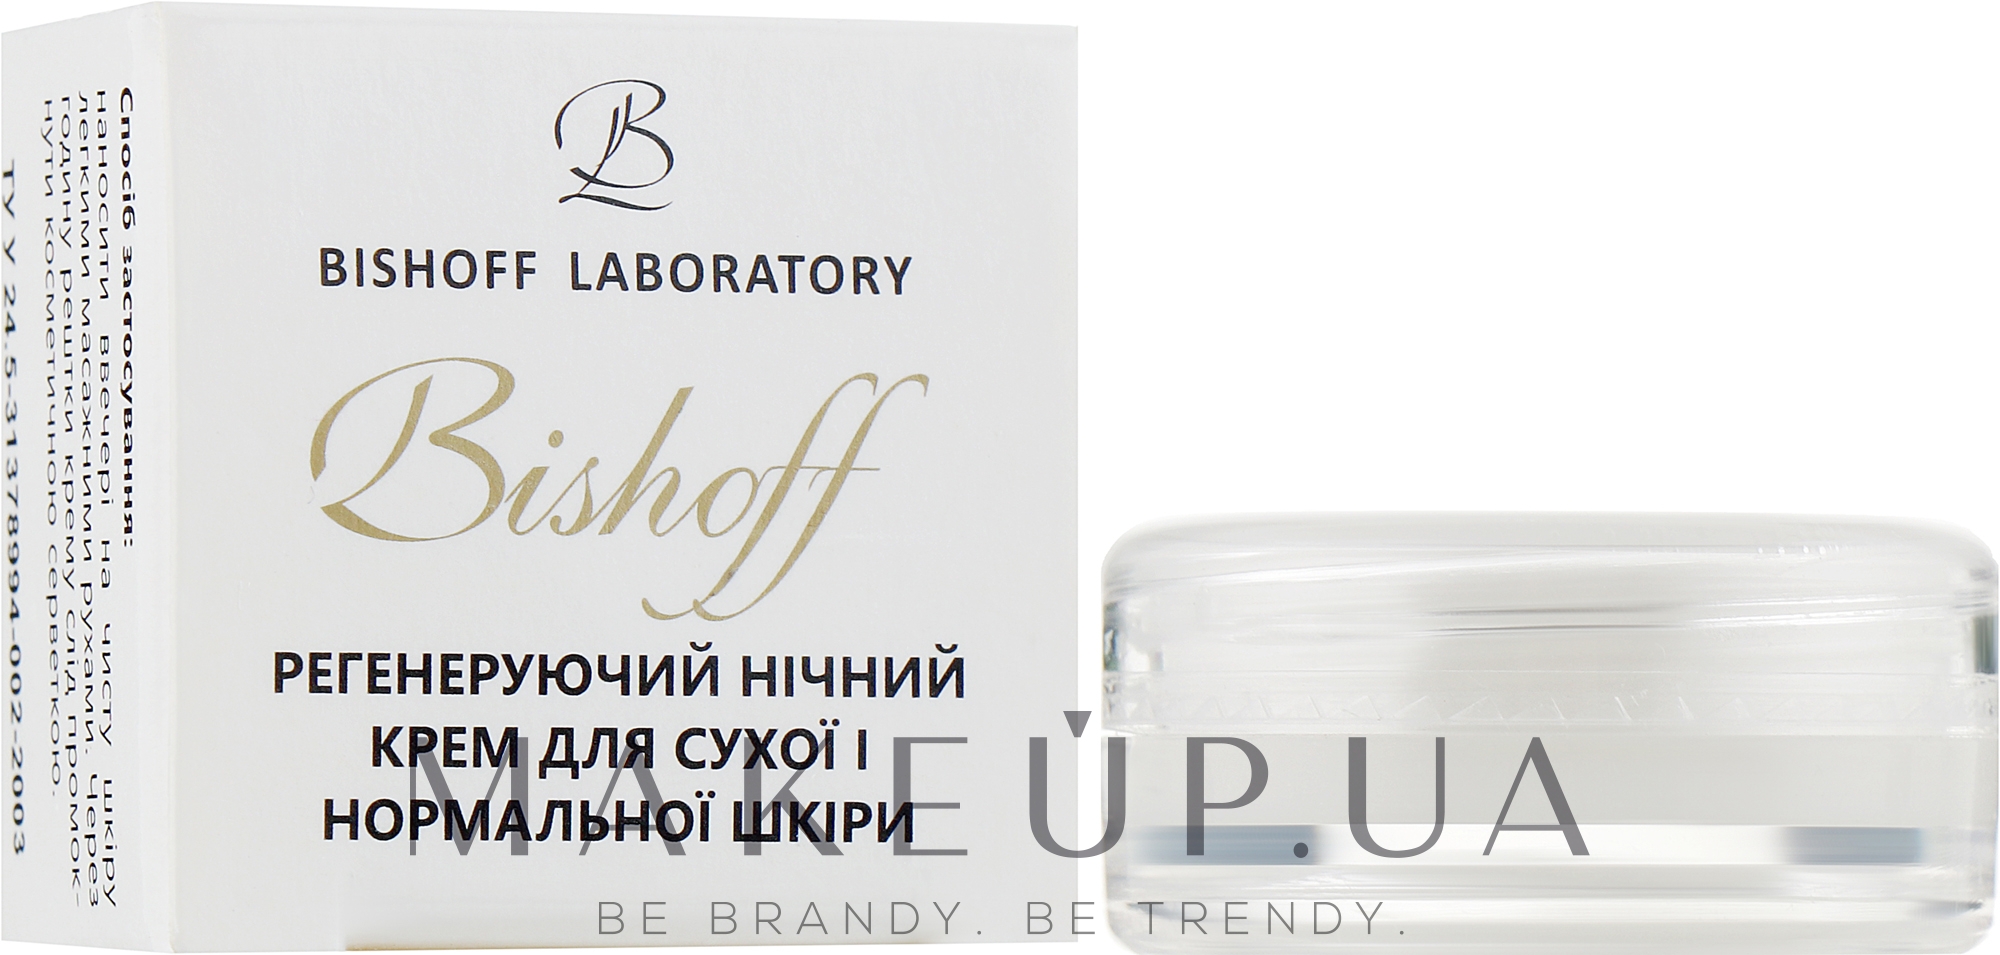 Регенерувальний нічний крем для сухої й нормальної шкіри - Bishoff (пробник) — фото 2.5ml